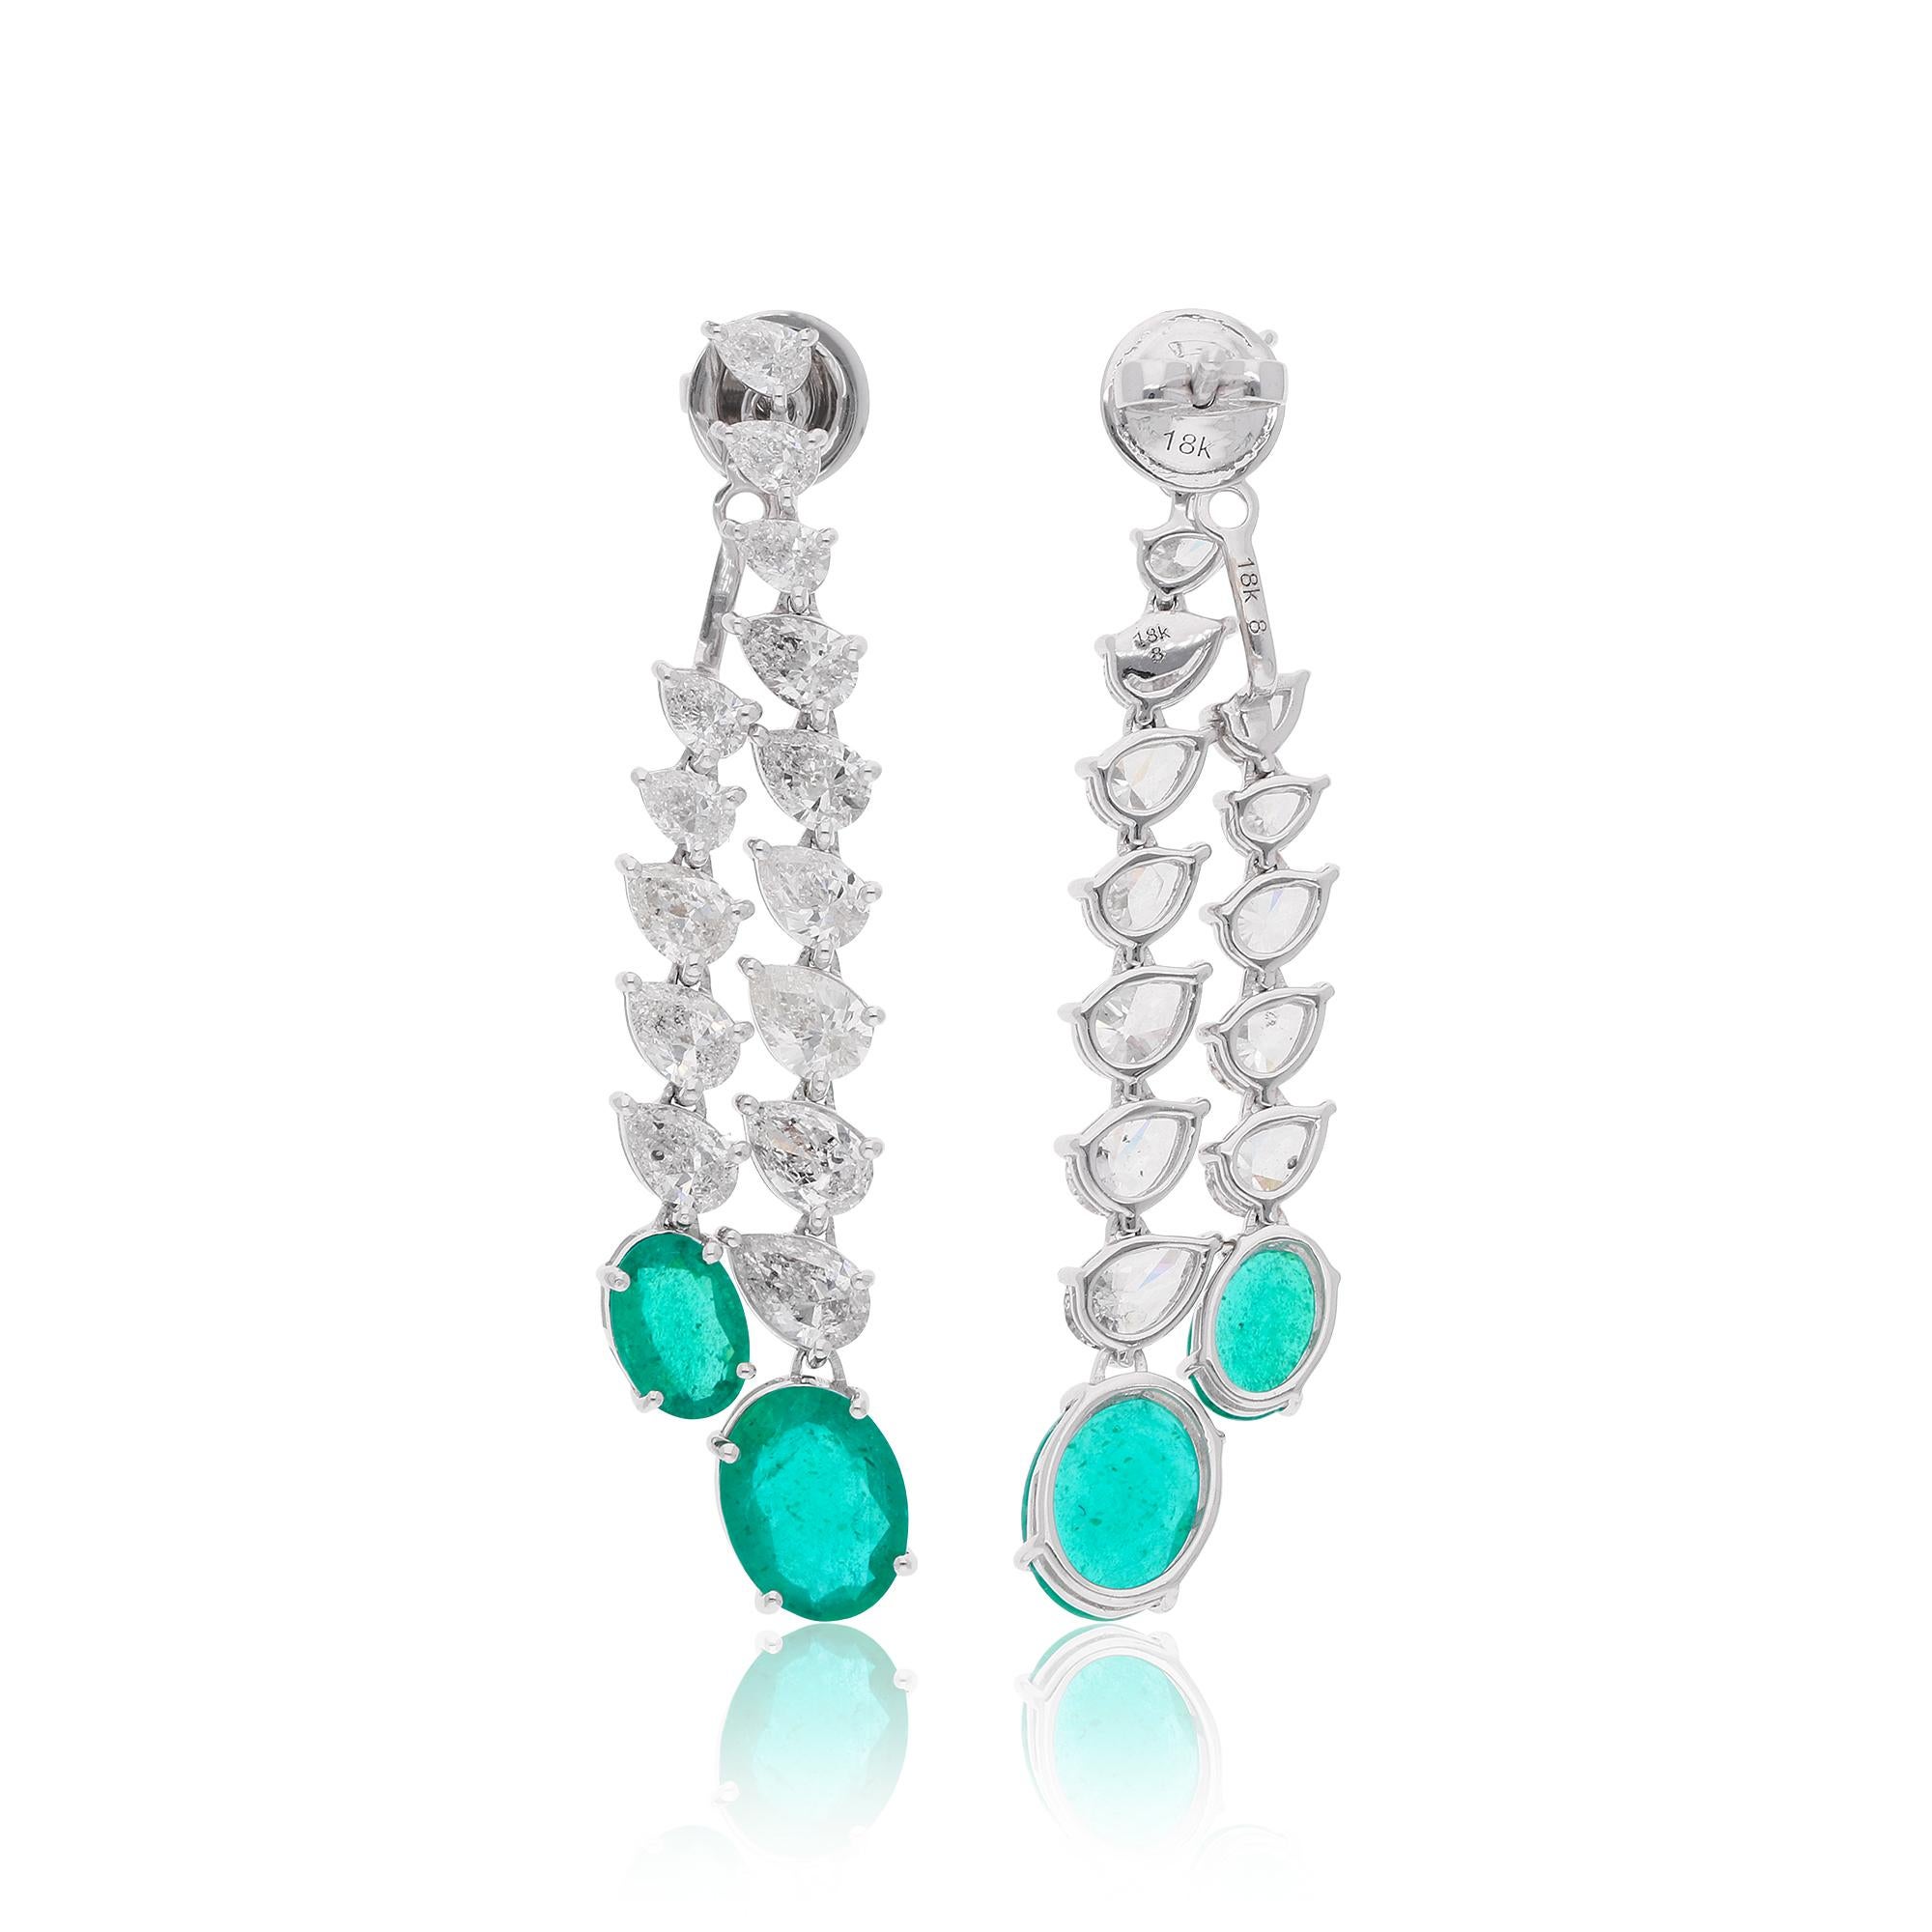 Diese Diamant- und Smaragd-Ohrringe mit 4,86 ct. Echte Diamanten & 4.19 ct. Sambische Smaragde sind ein Versprechen für Vollkommenheit und Reinheit. Diese Ohrringe sind in 18 Karat massivem Weißgold gefasst. Sie können diese Ohrringe in 10k/14k/18k,